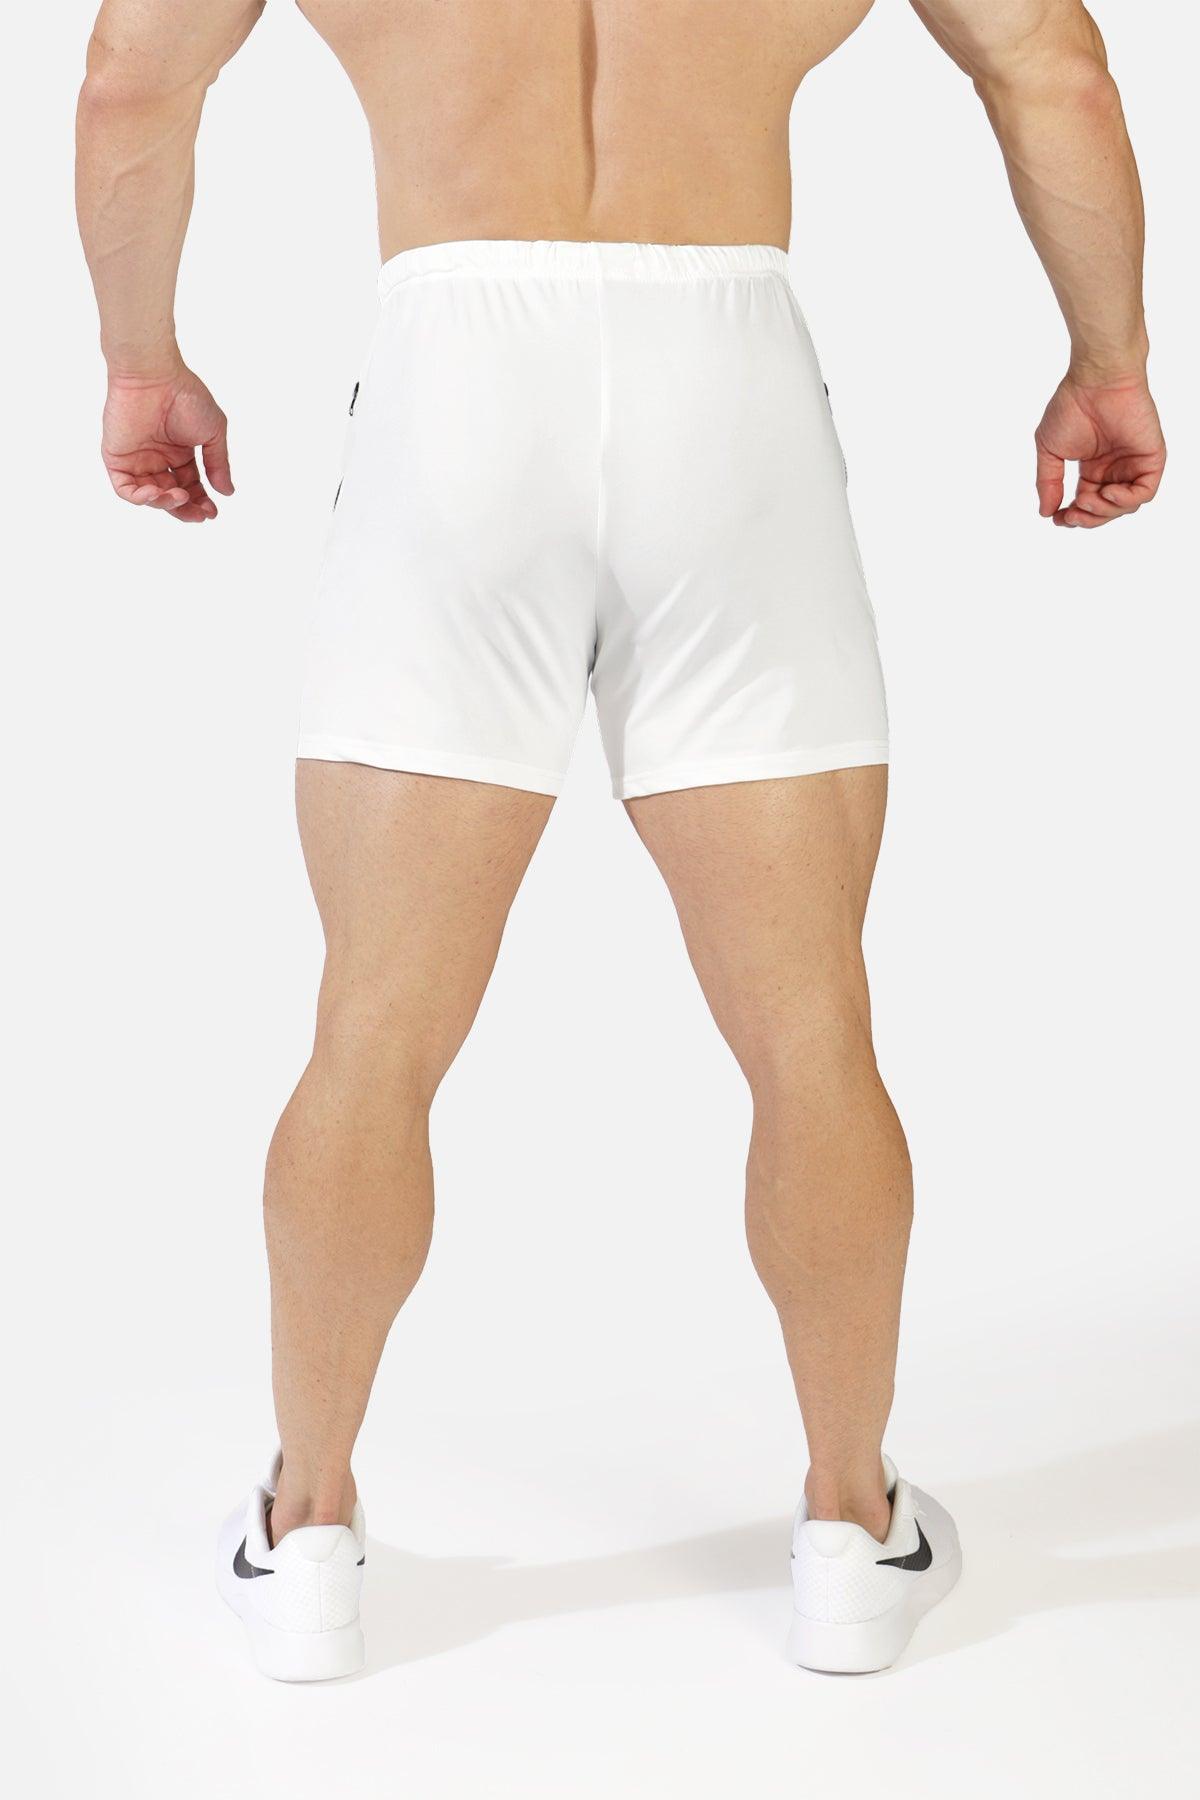 Agile Bodybuilding 4'' Shorts w Zipper Pockets - White - Jed North Canada